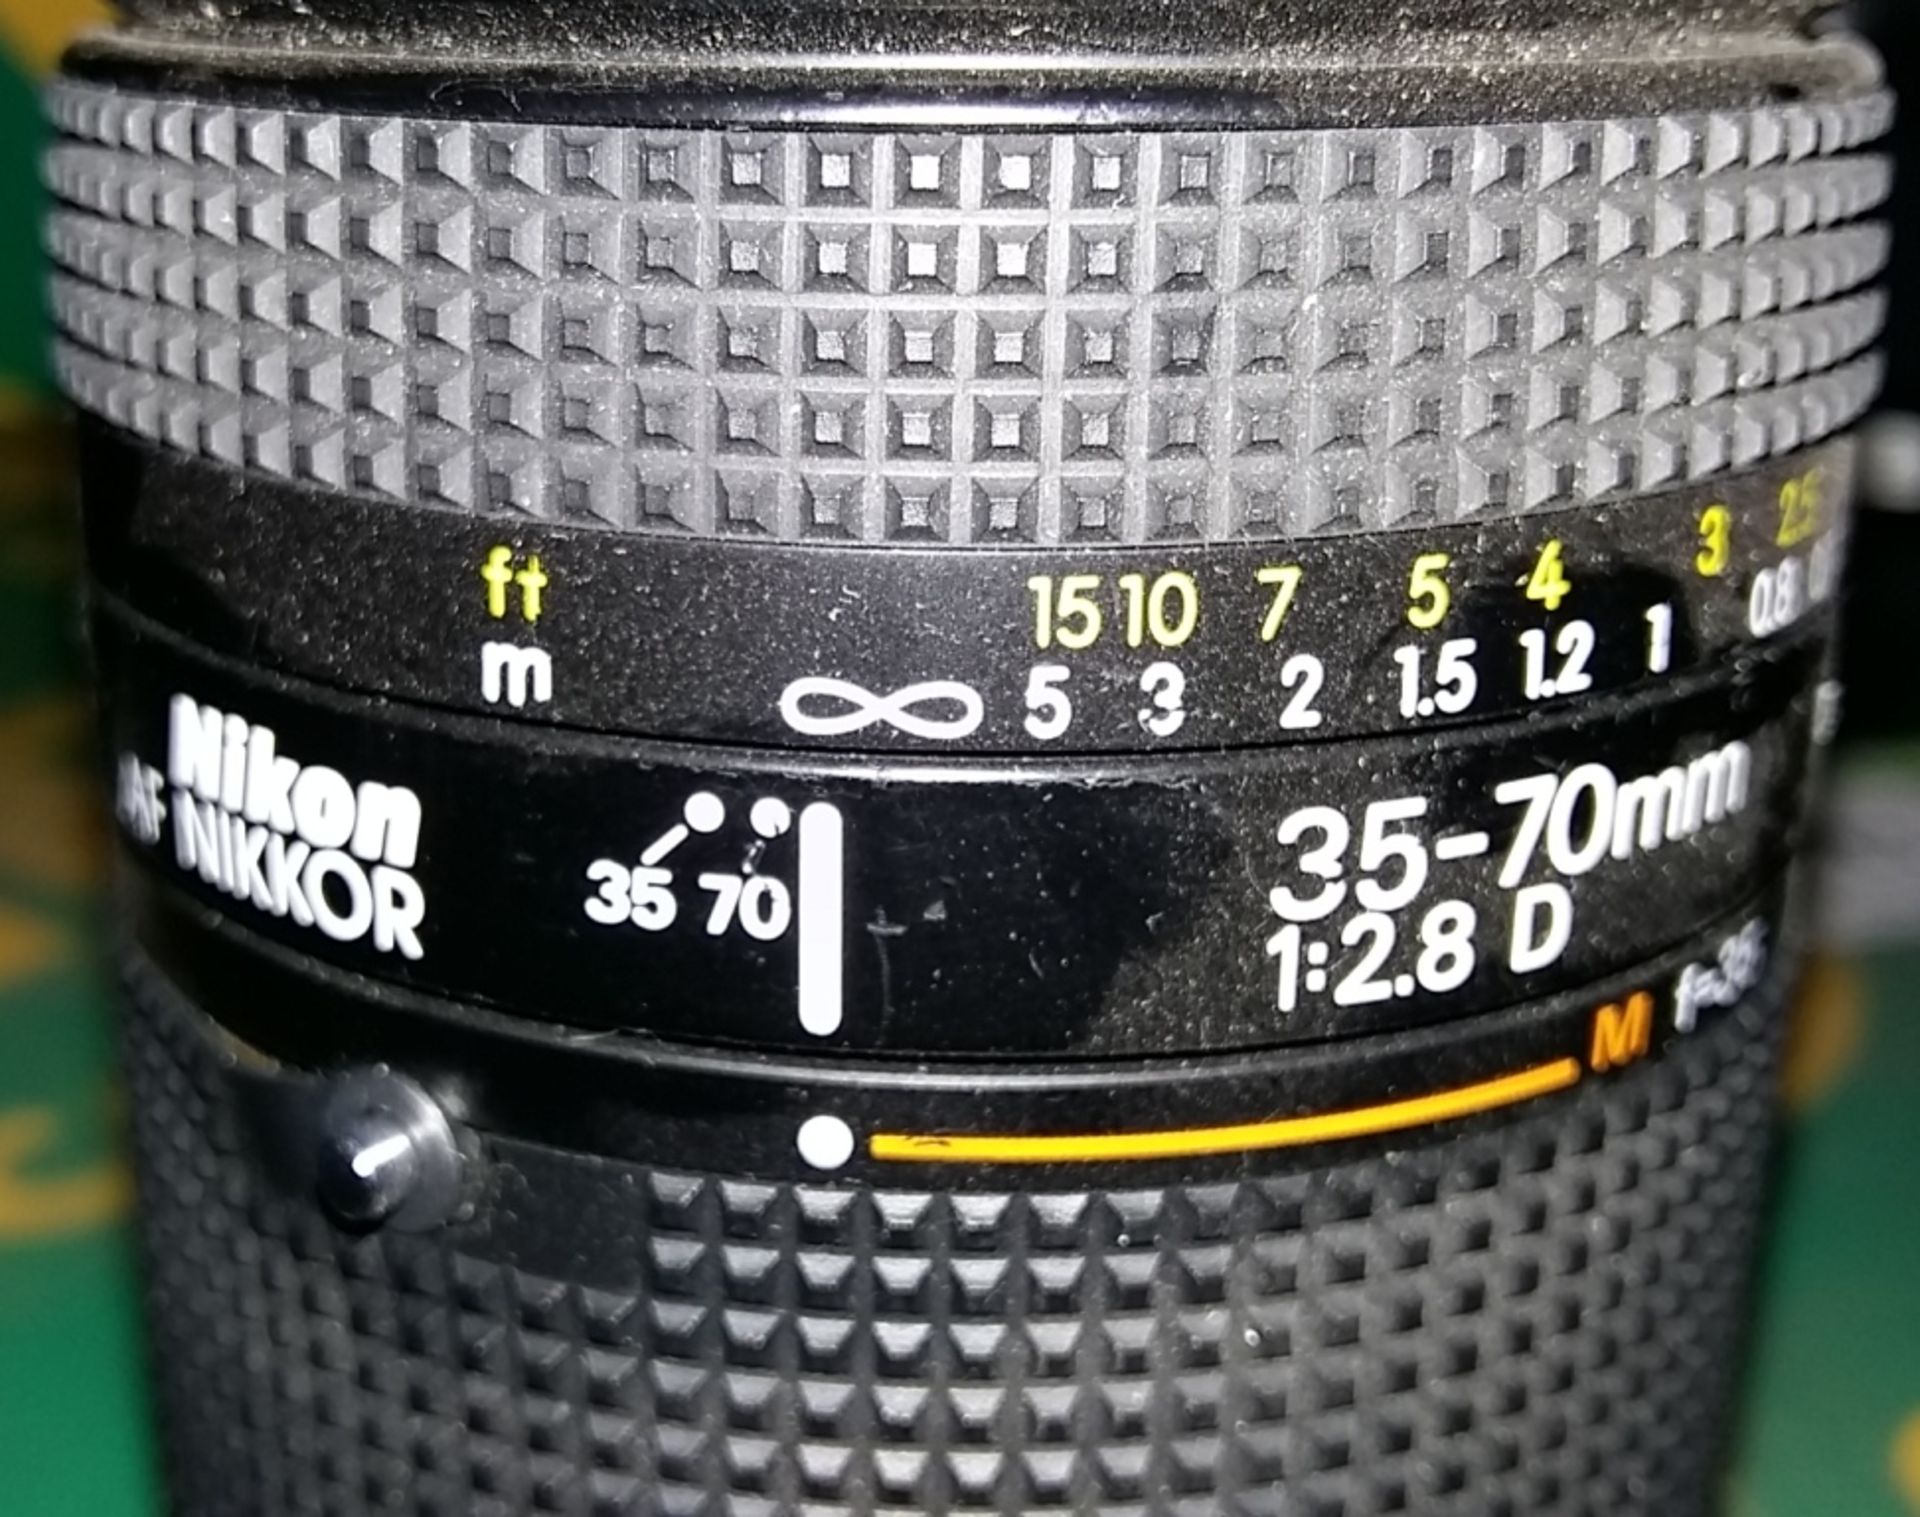 Nikon AF Nikkor 35-70mm 1:2.8D camera lens - Image 2 of 3